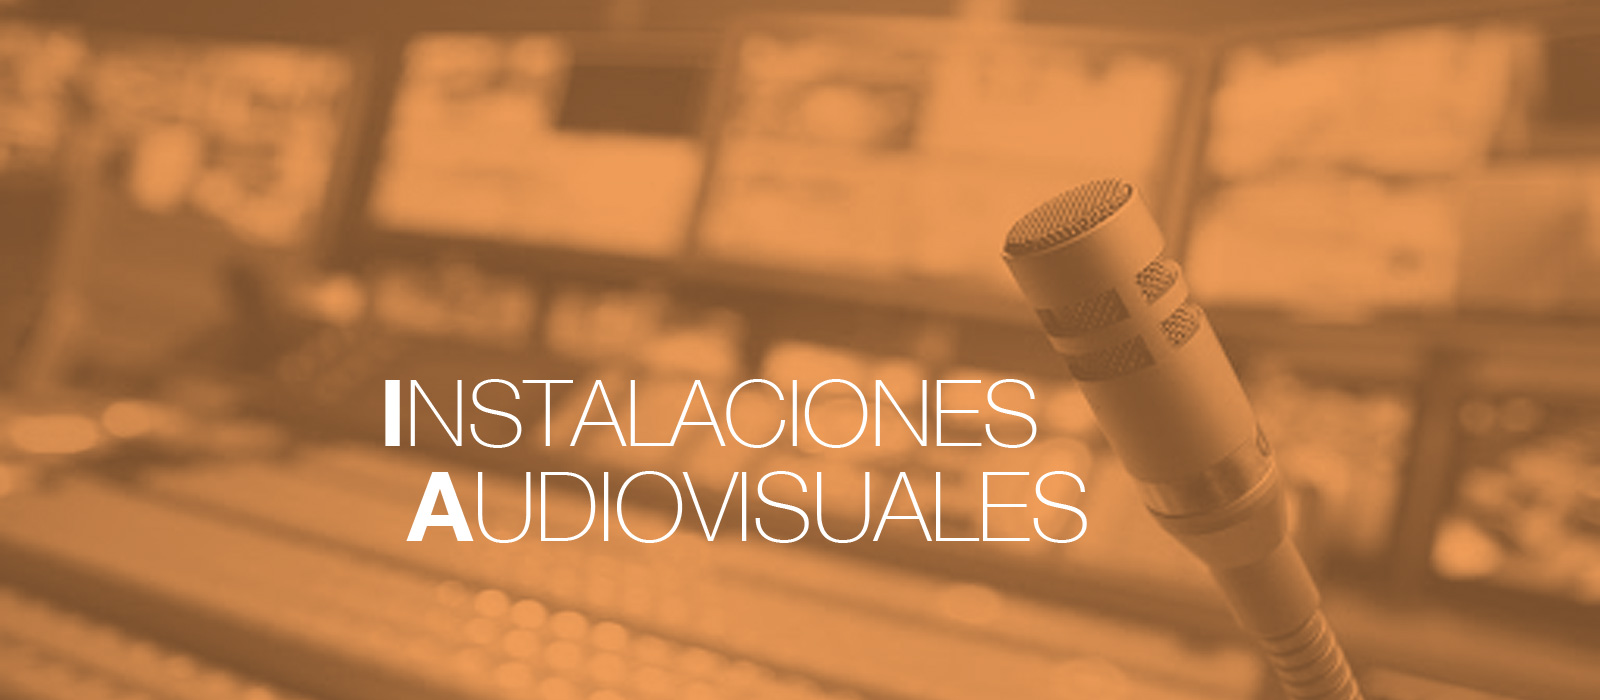 Instalaciones Audiovisuales Madrid. OmDigital Soluciones